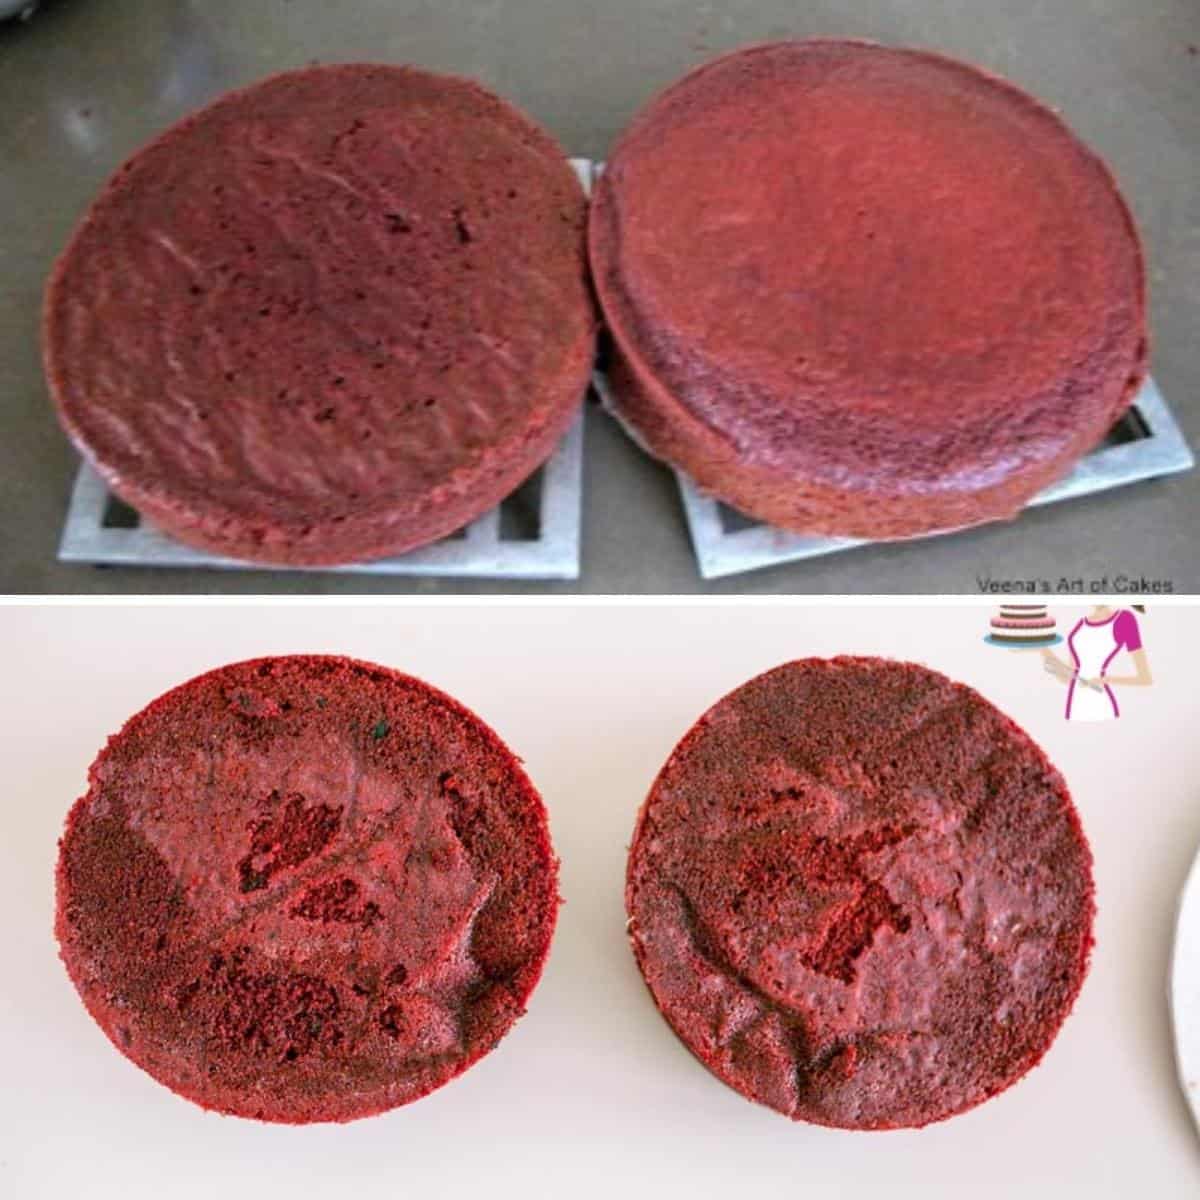 Baked red velvet cakes on cooling rack.